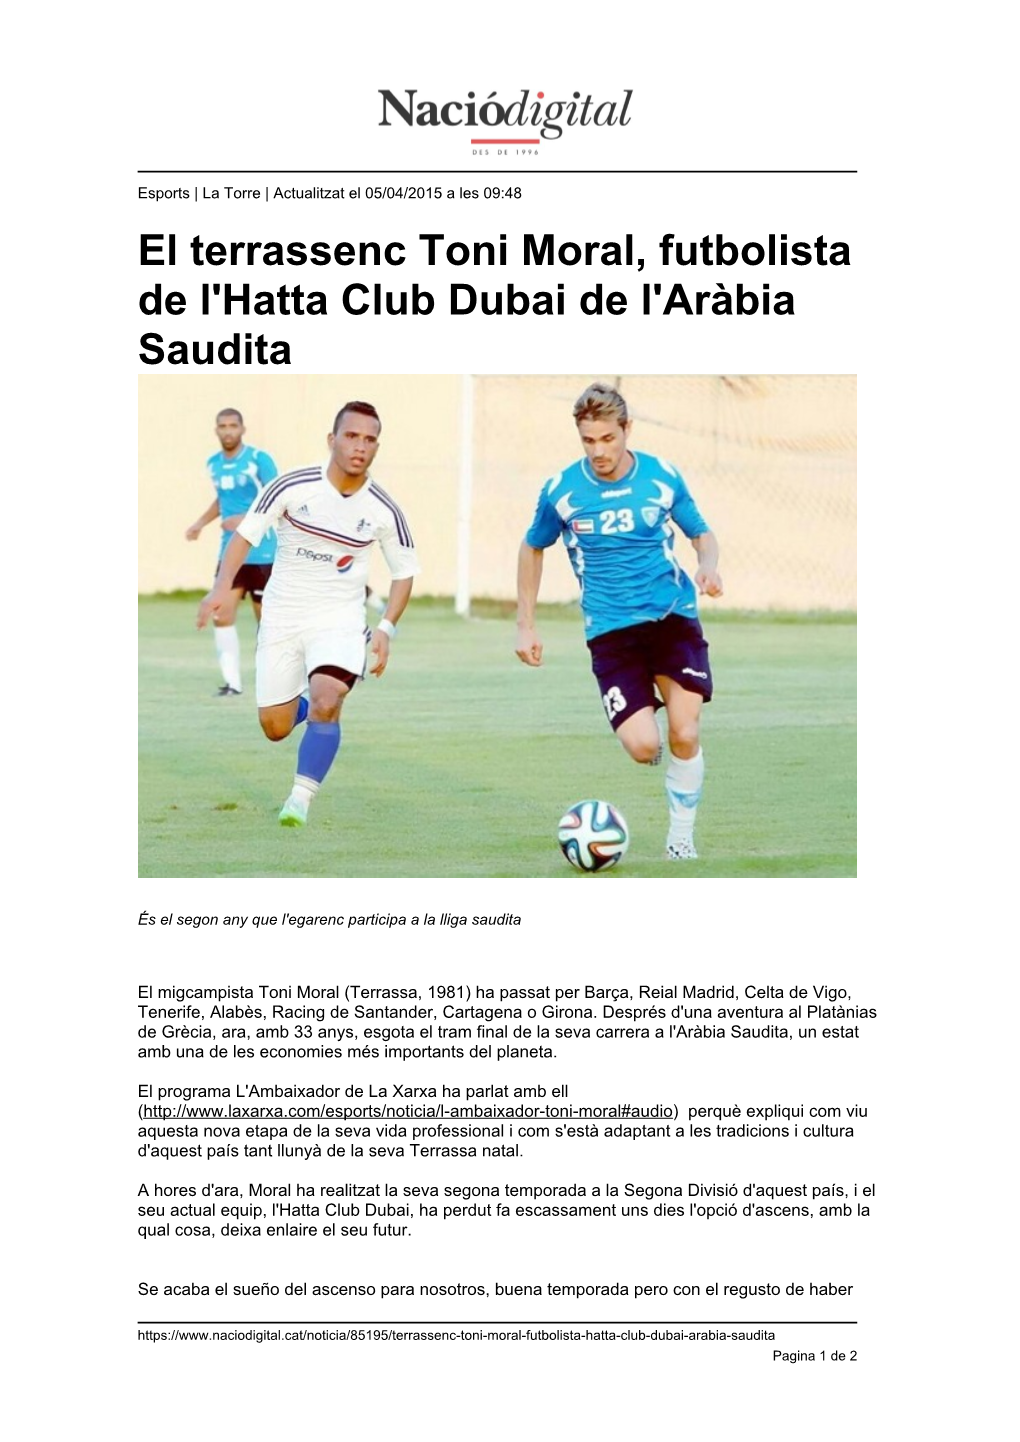 El Terrassenc Toni Moral, Futbolista De L'hatta Club Dubai De L'aràbia Saudita